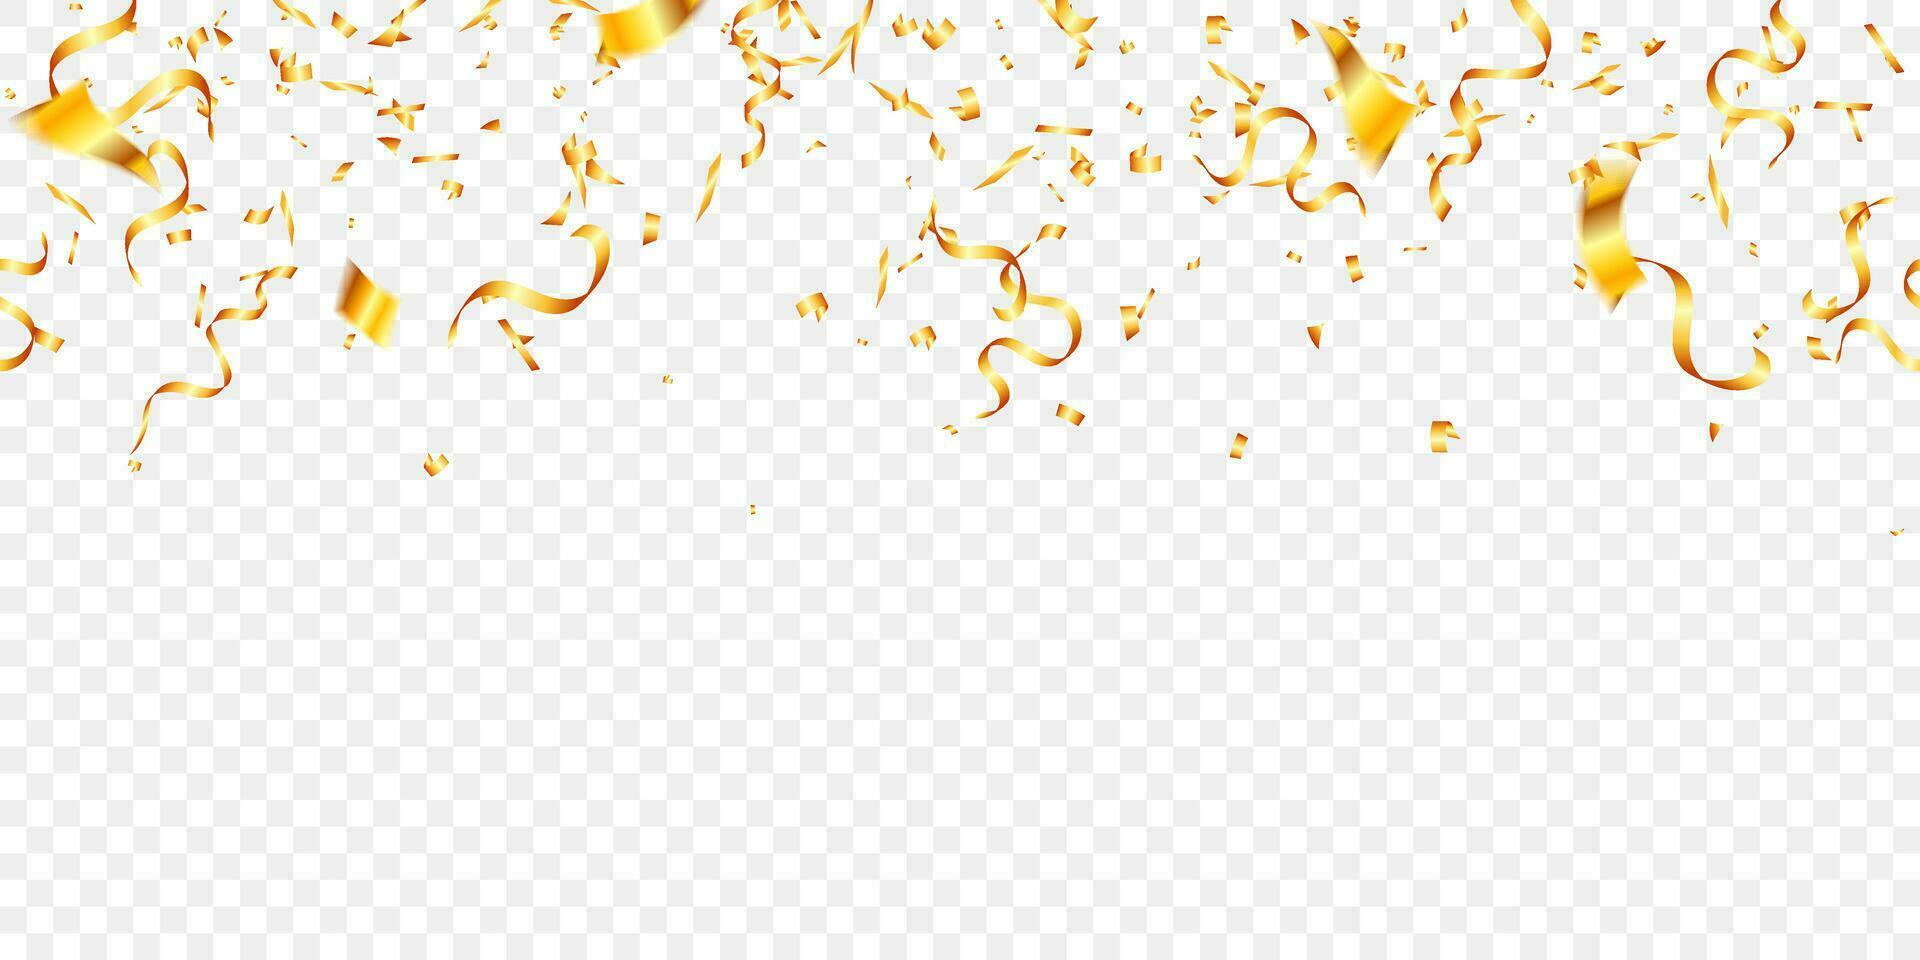 vector confetti PNG en gouden klatergoud vallen van de lucht. vakantie, verjaardag, partij